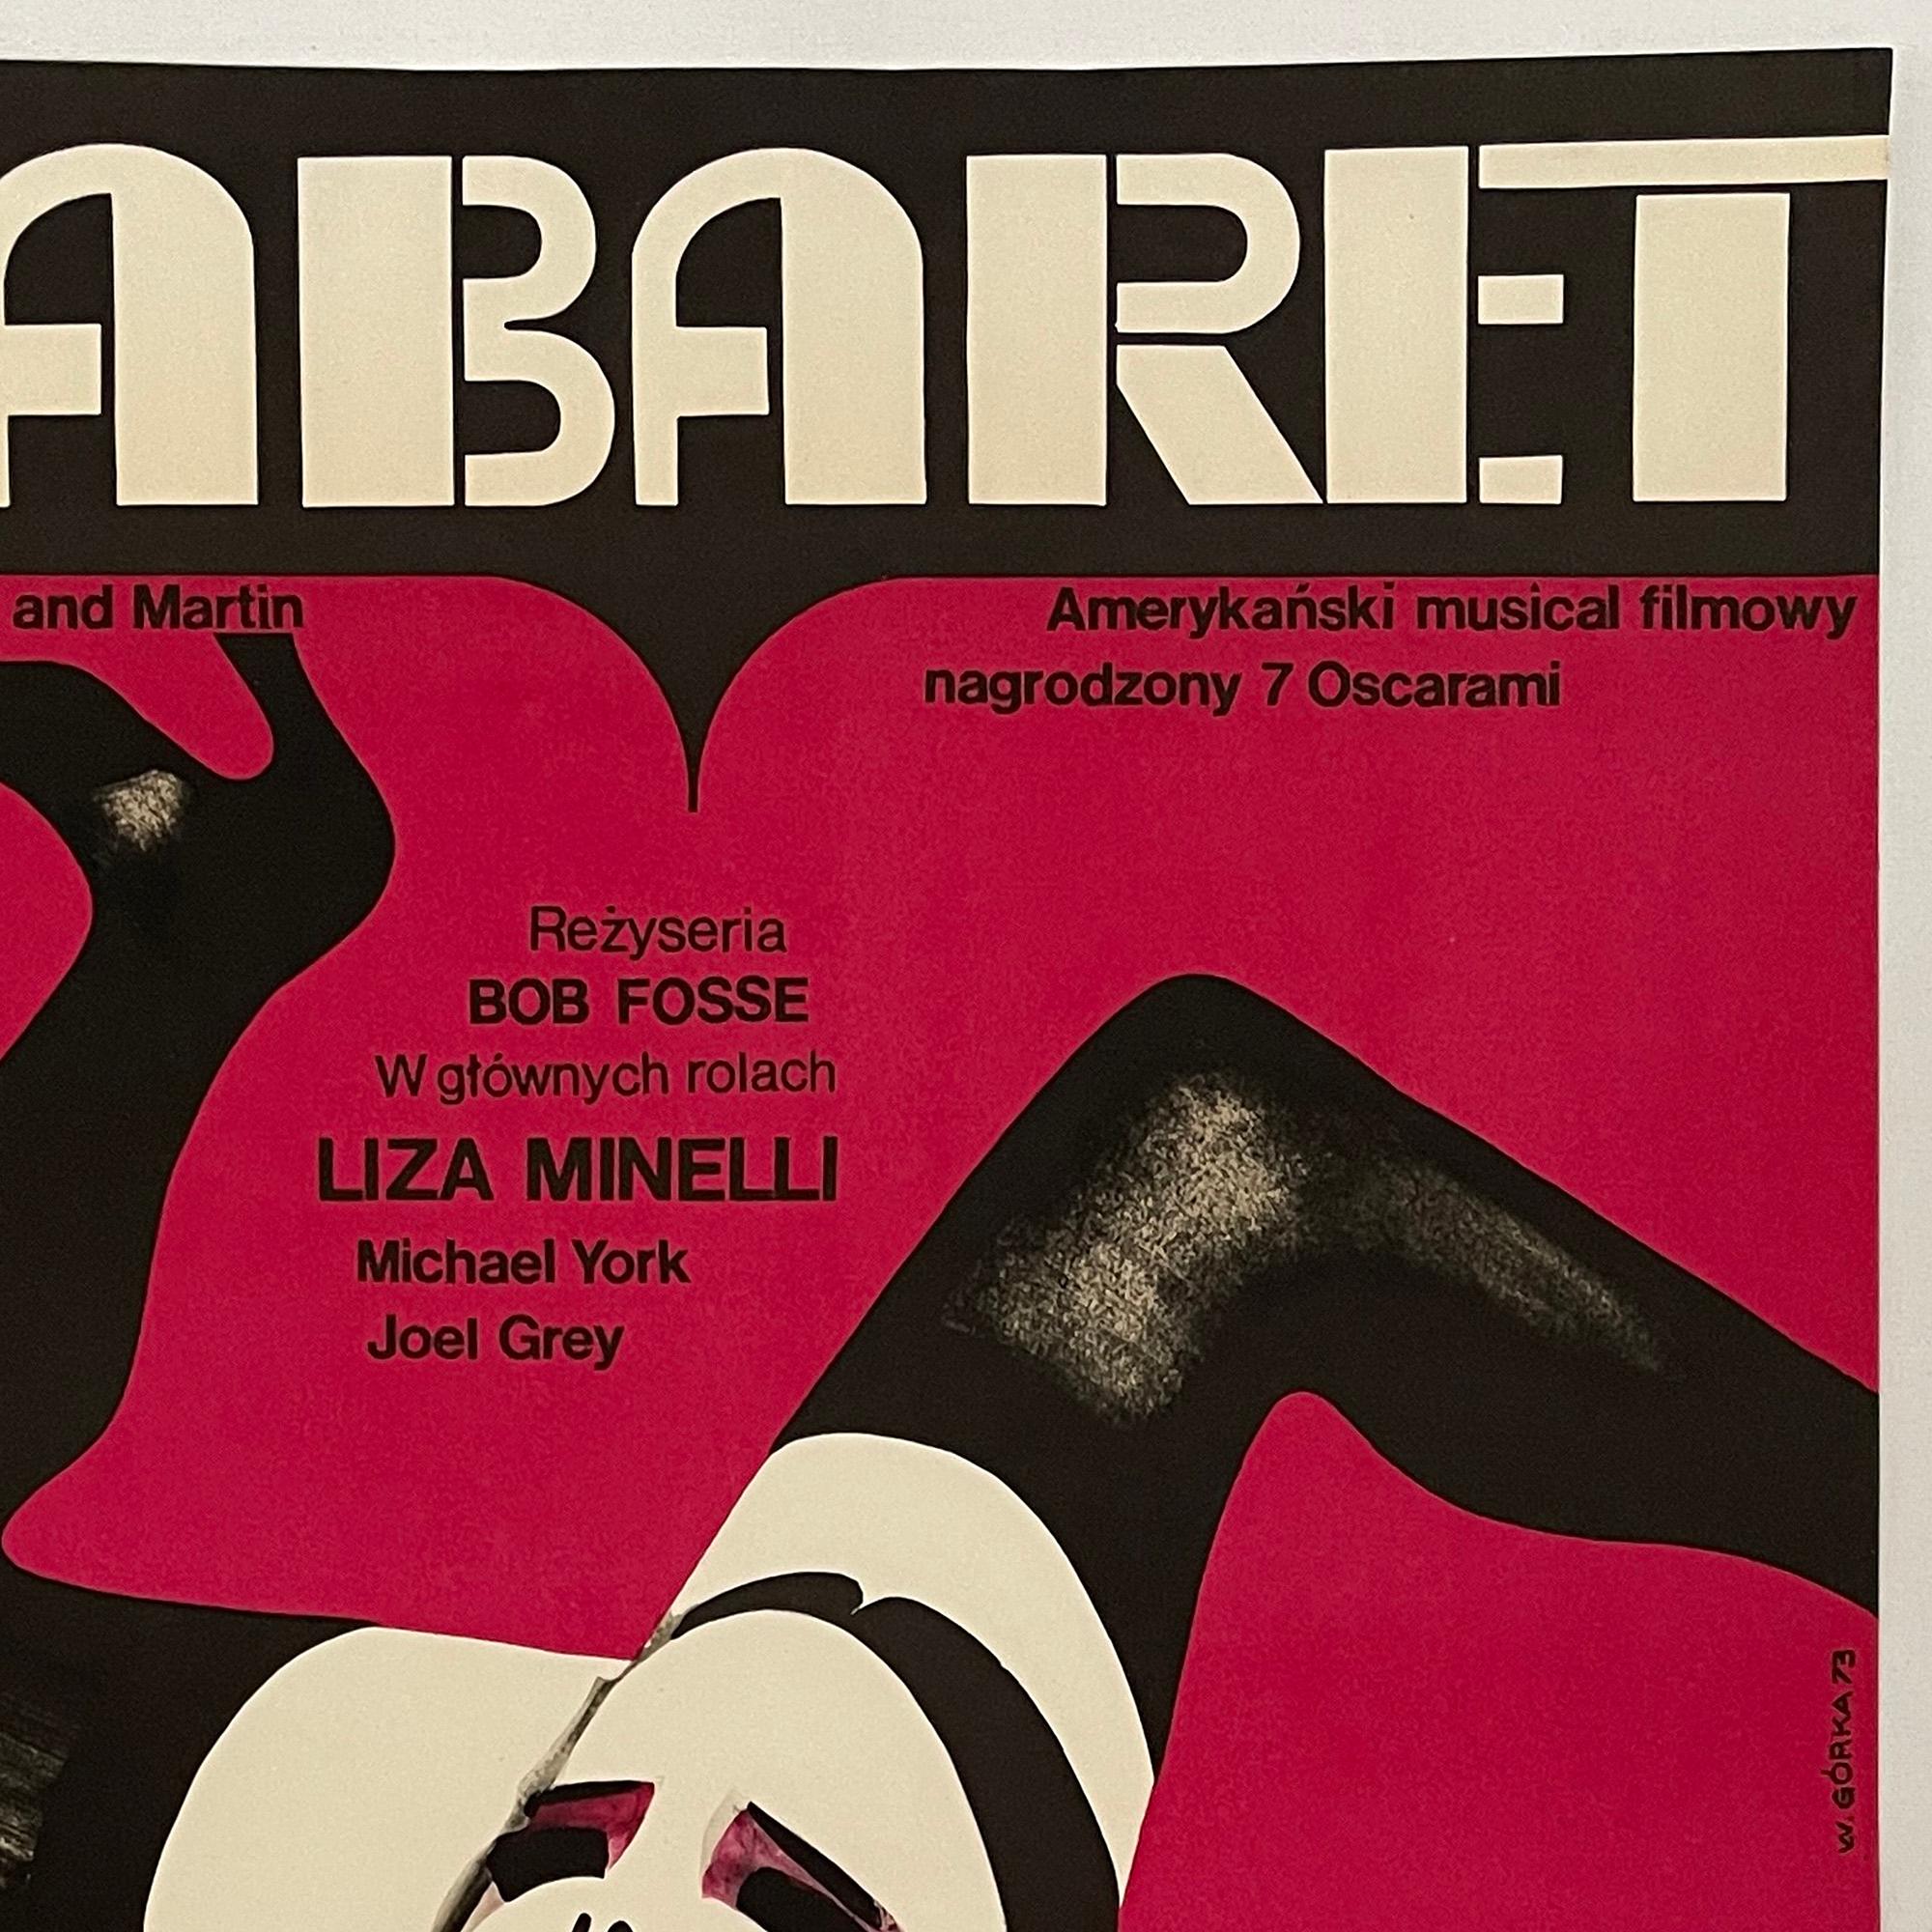 Other Cabaret, Original Vintage Polish Movie Poster by Wiktor Gorka, 1973 For Sale